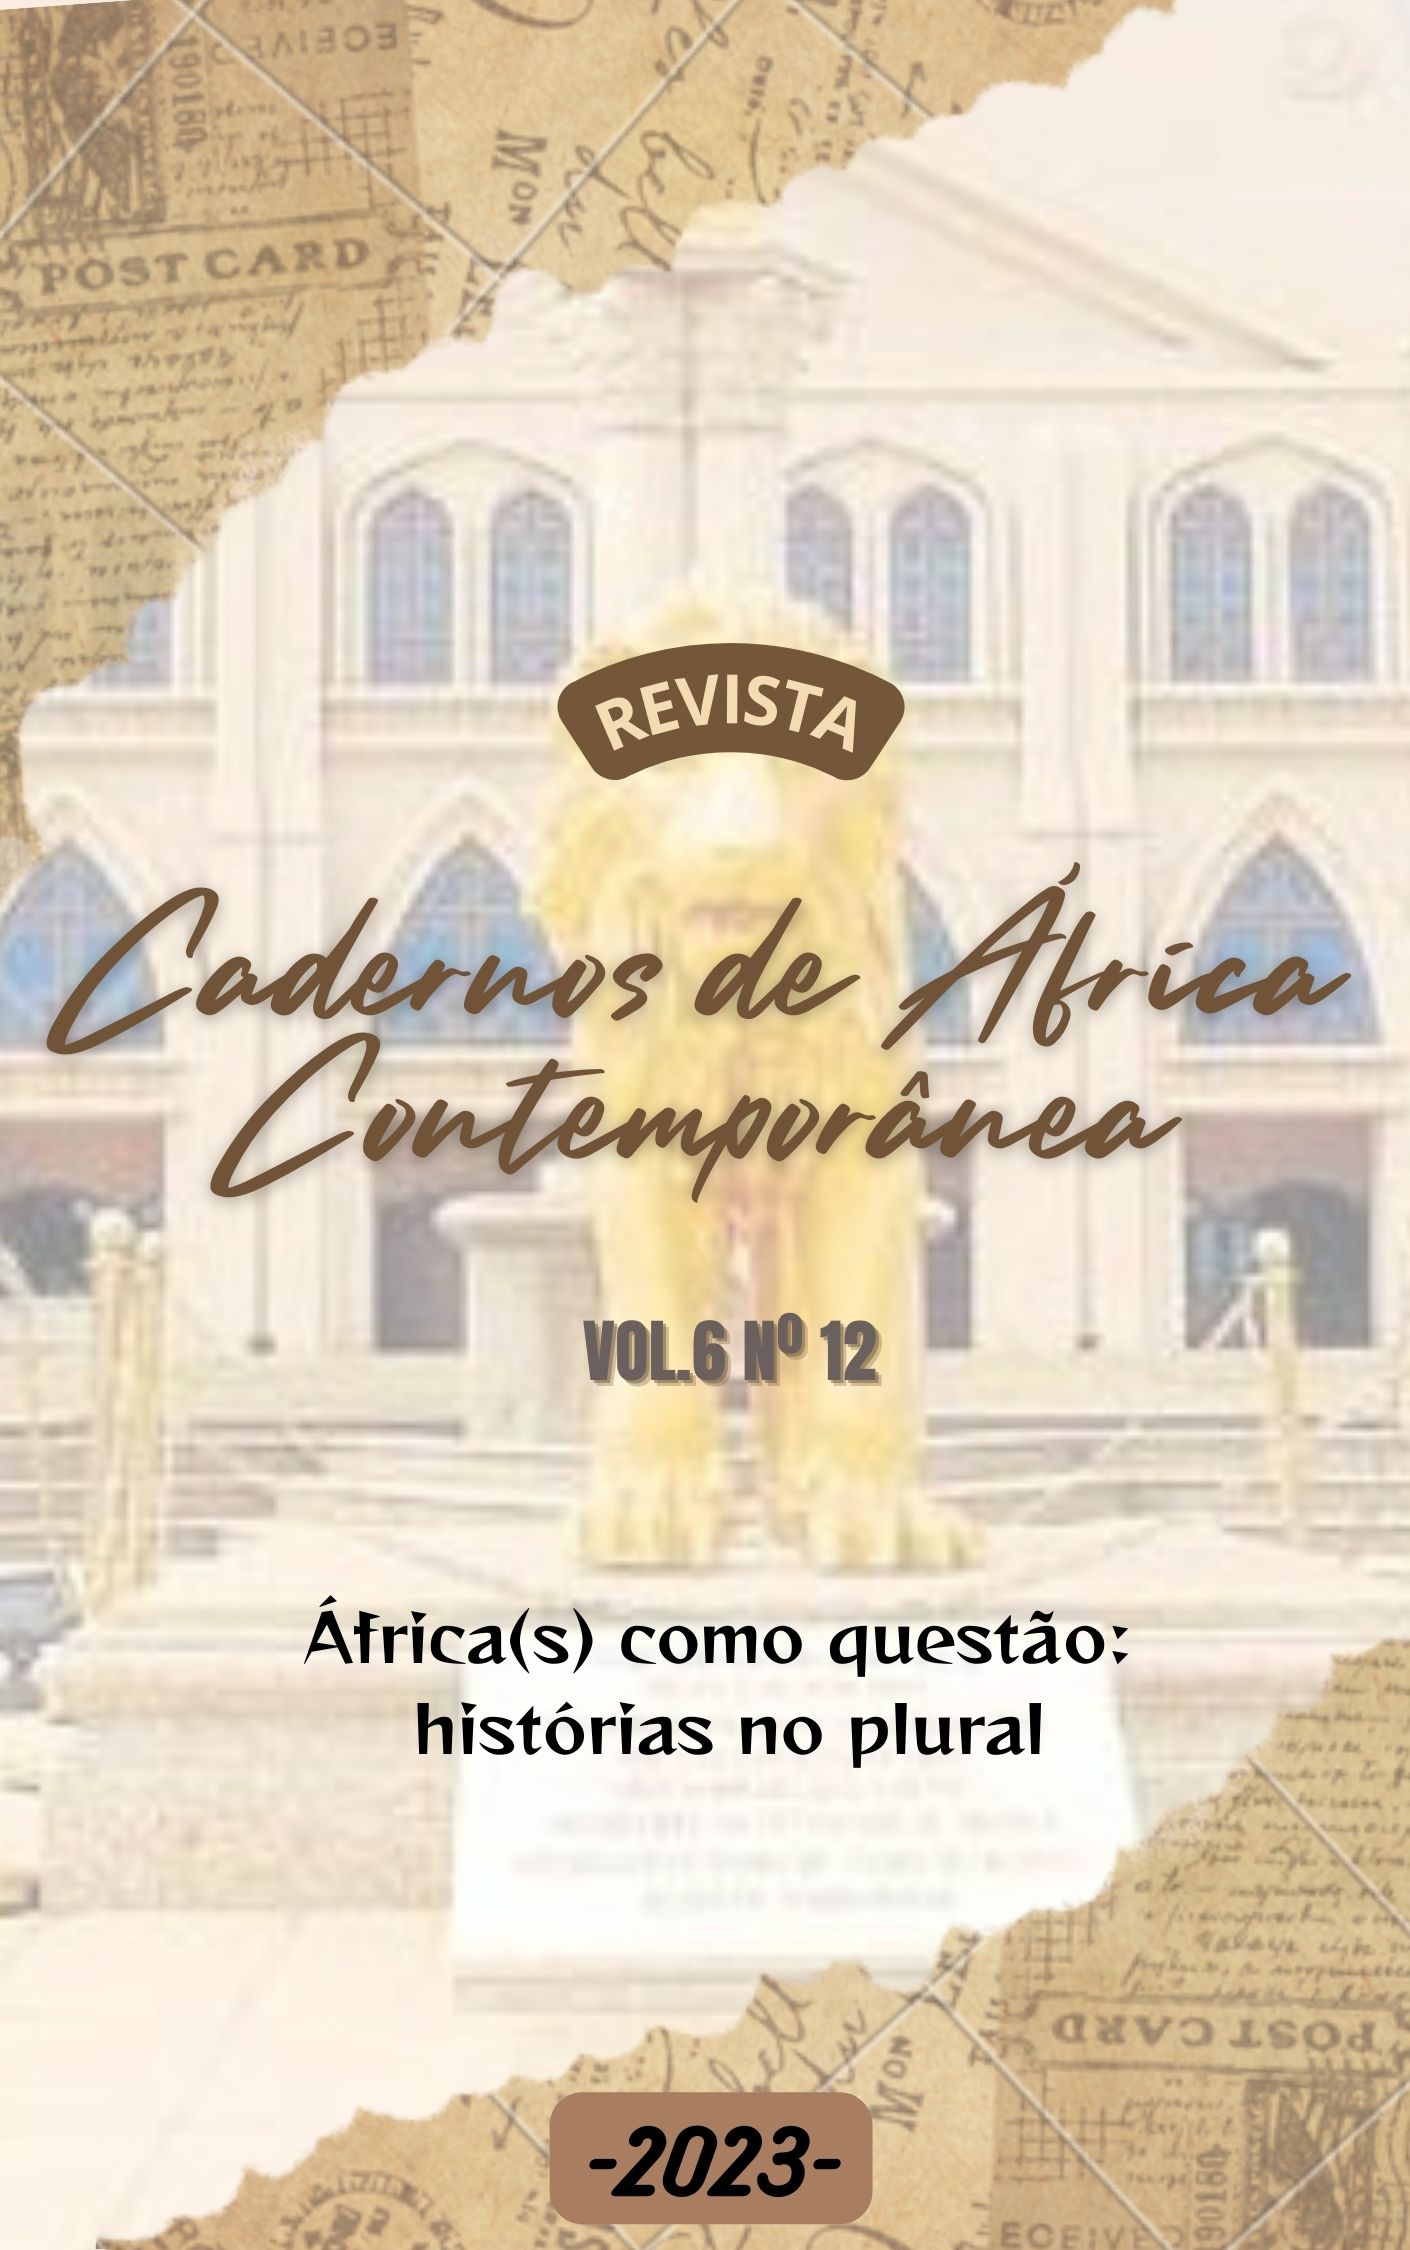 					Afficher Vol. 6 No. 12 (2023): África(s) como questão: histórias no plural
				